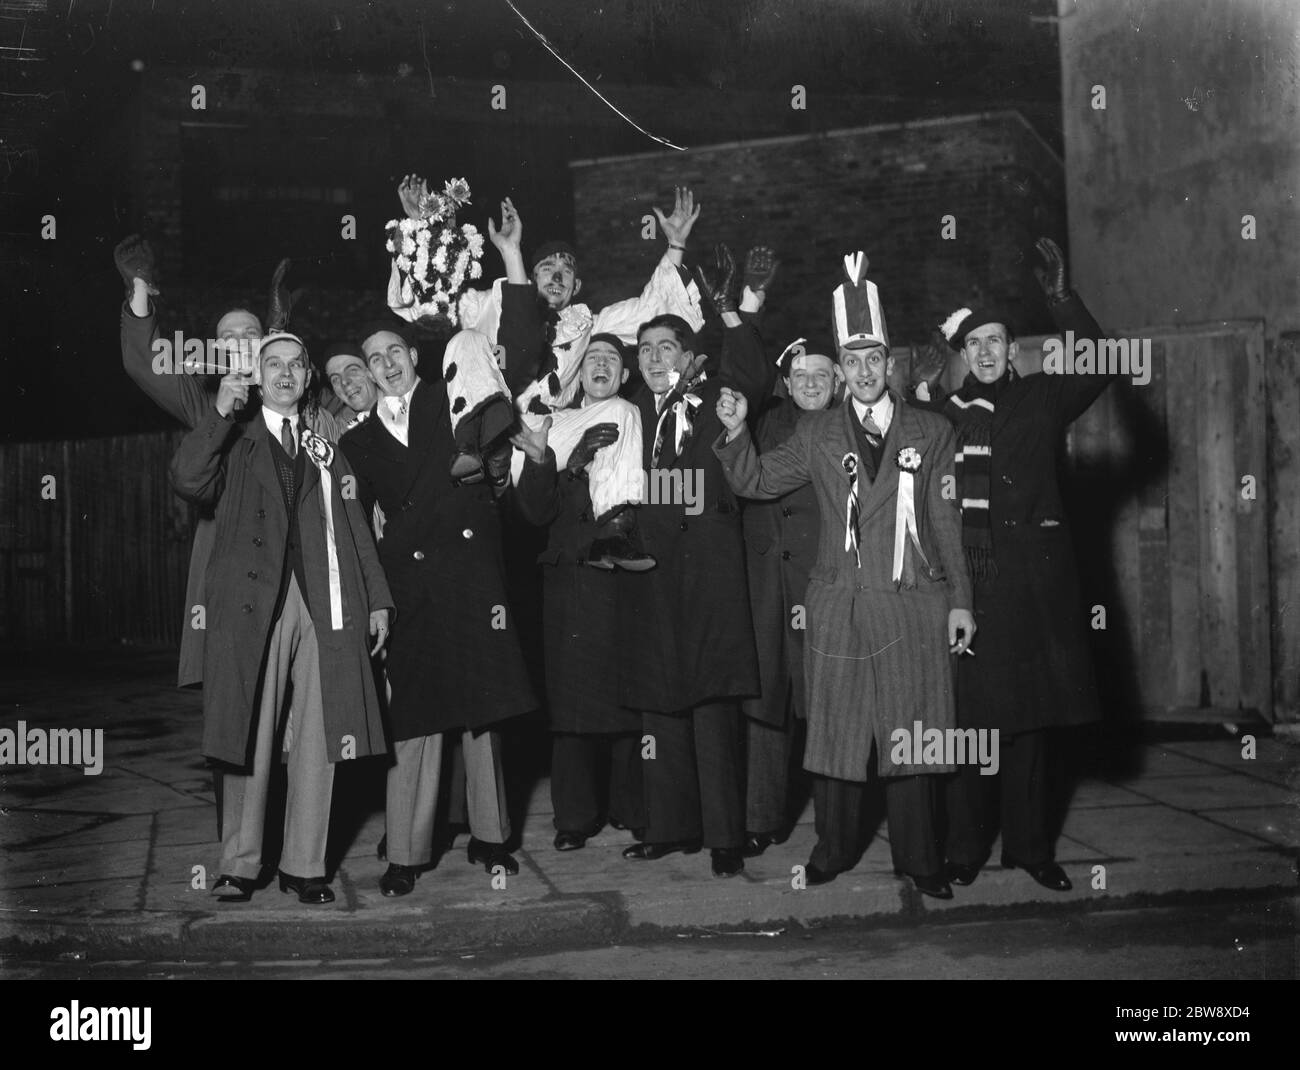 Dartford Anhänger - FA Cup - Dartfords Anhänger verlassen um Mitternacht, um nach Shildon für ihre FA Cup-Unentschieden zu reisen - 12/12/36 Charabanc Partei bereit zu gehen und Dartford Fußballverein zu unterstützen. 1936 Stockfoto